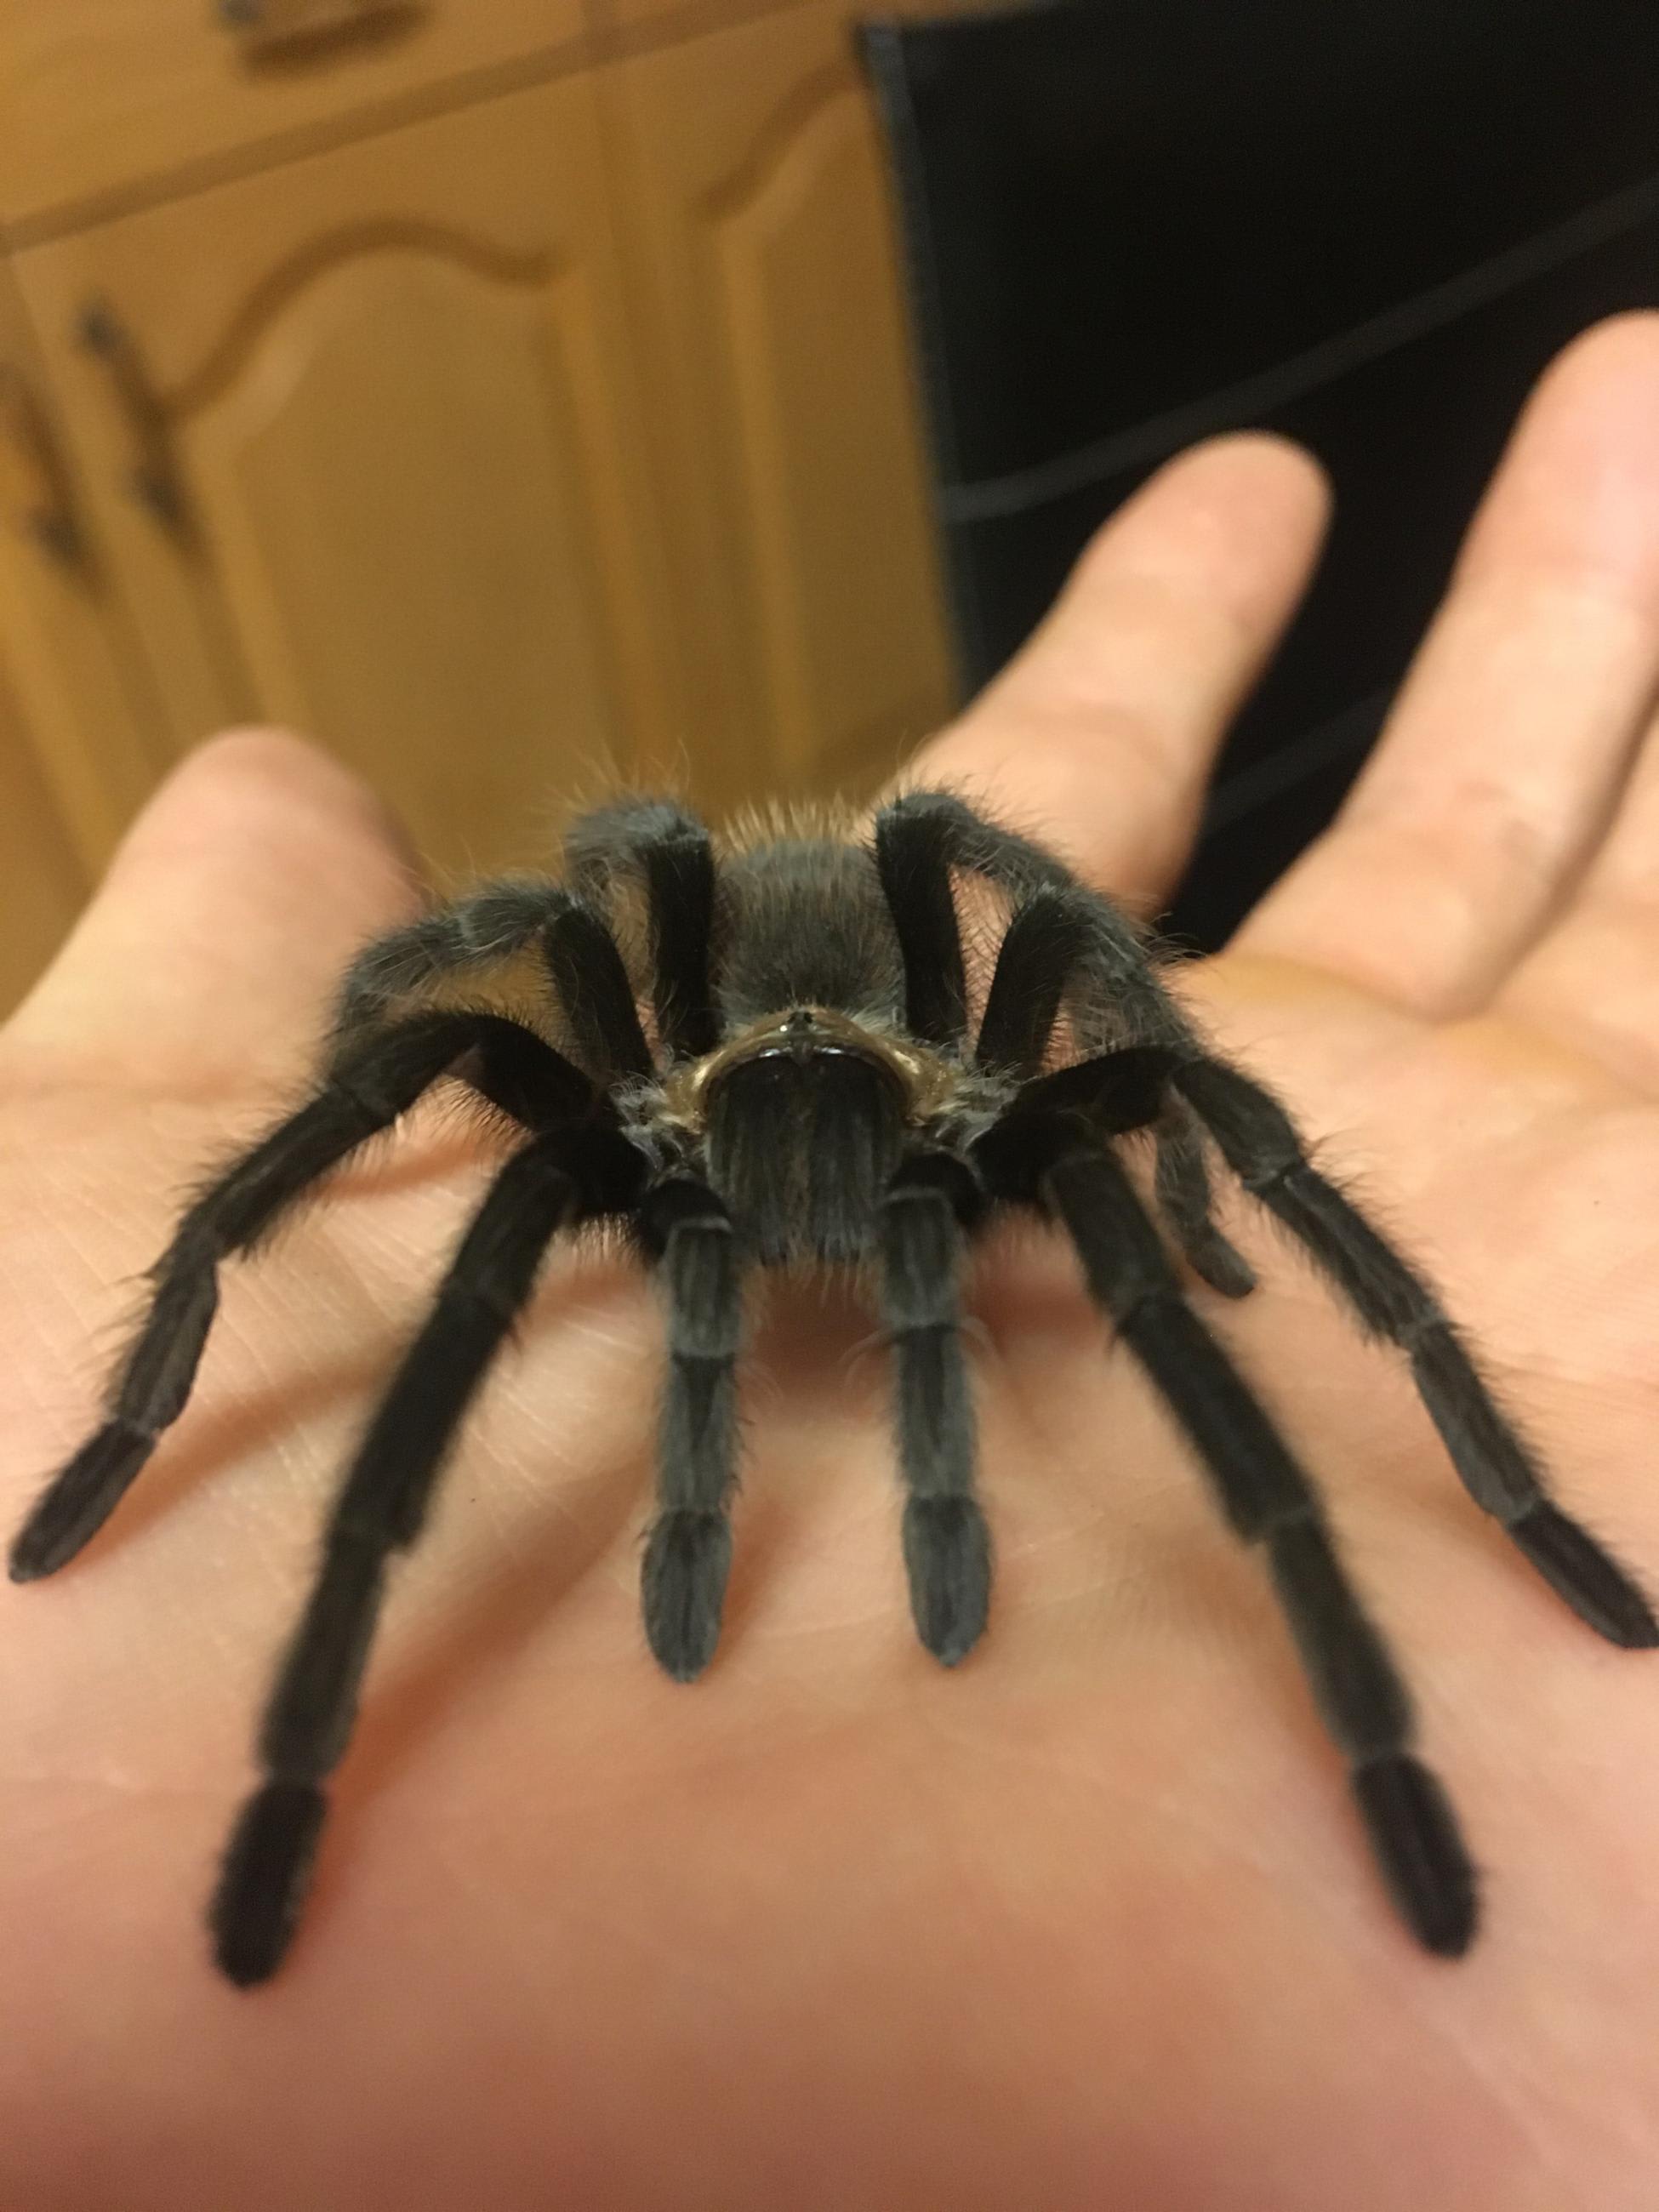 tarantula pet